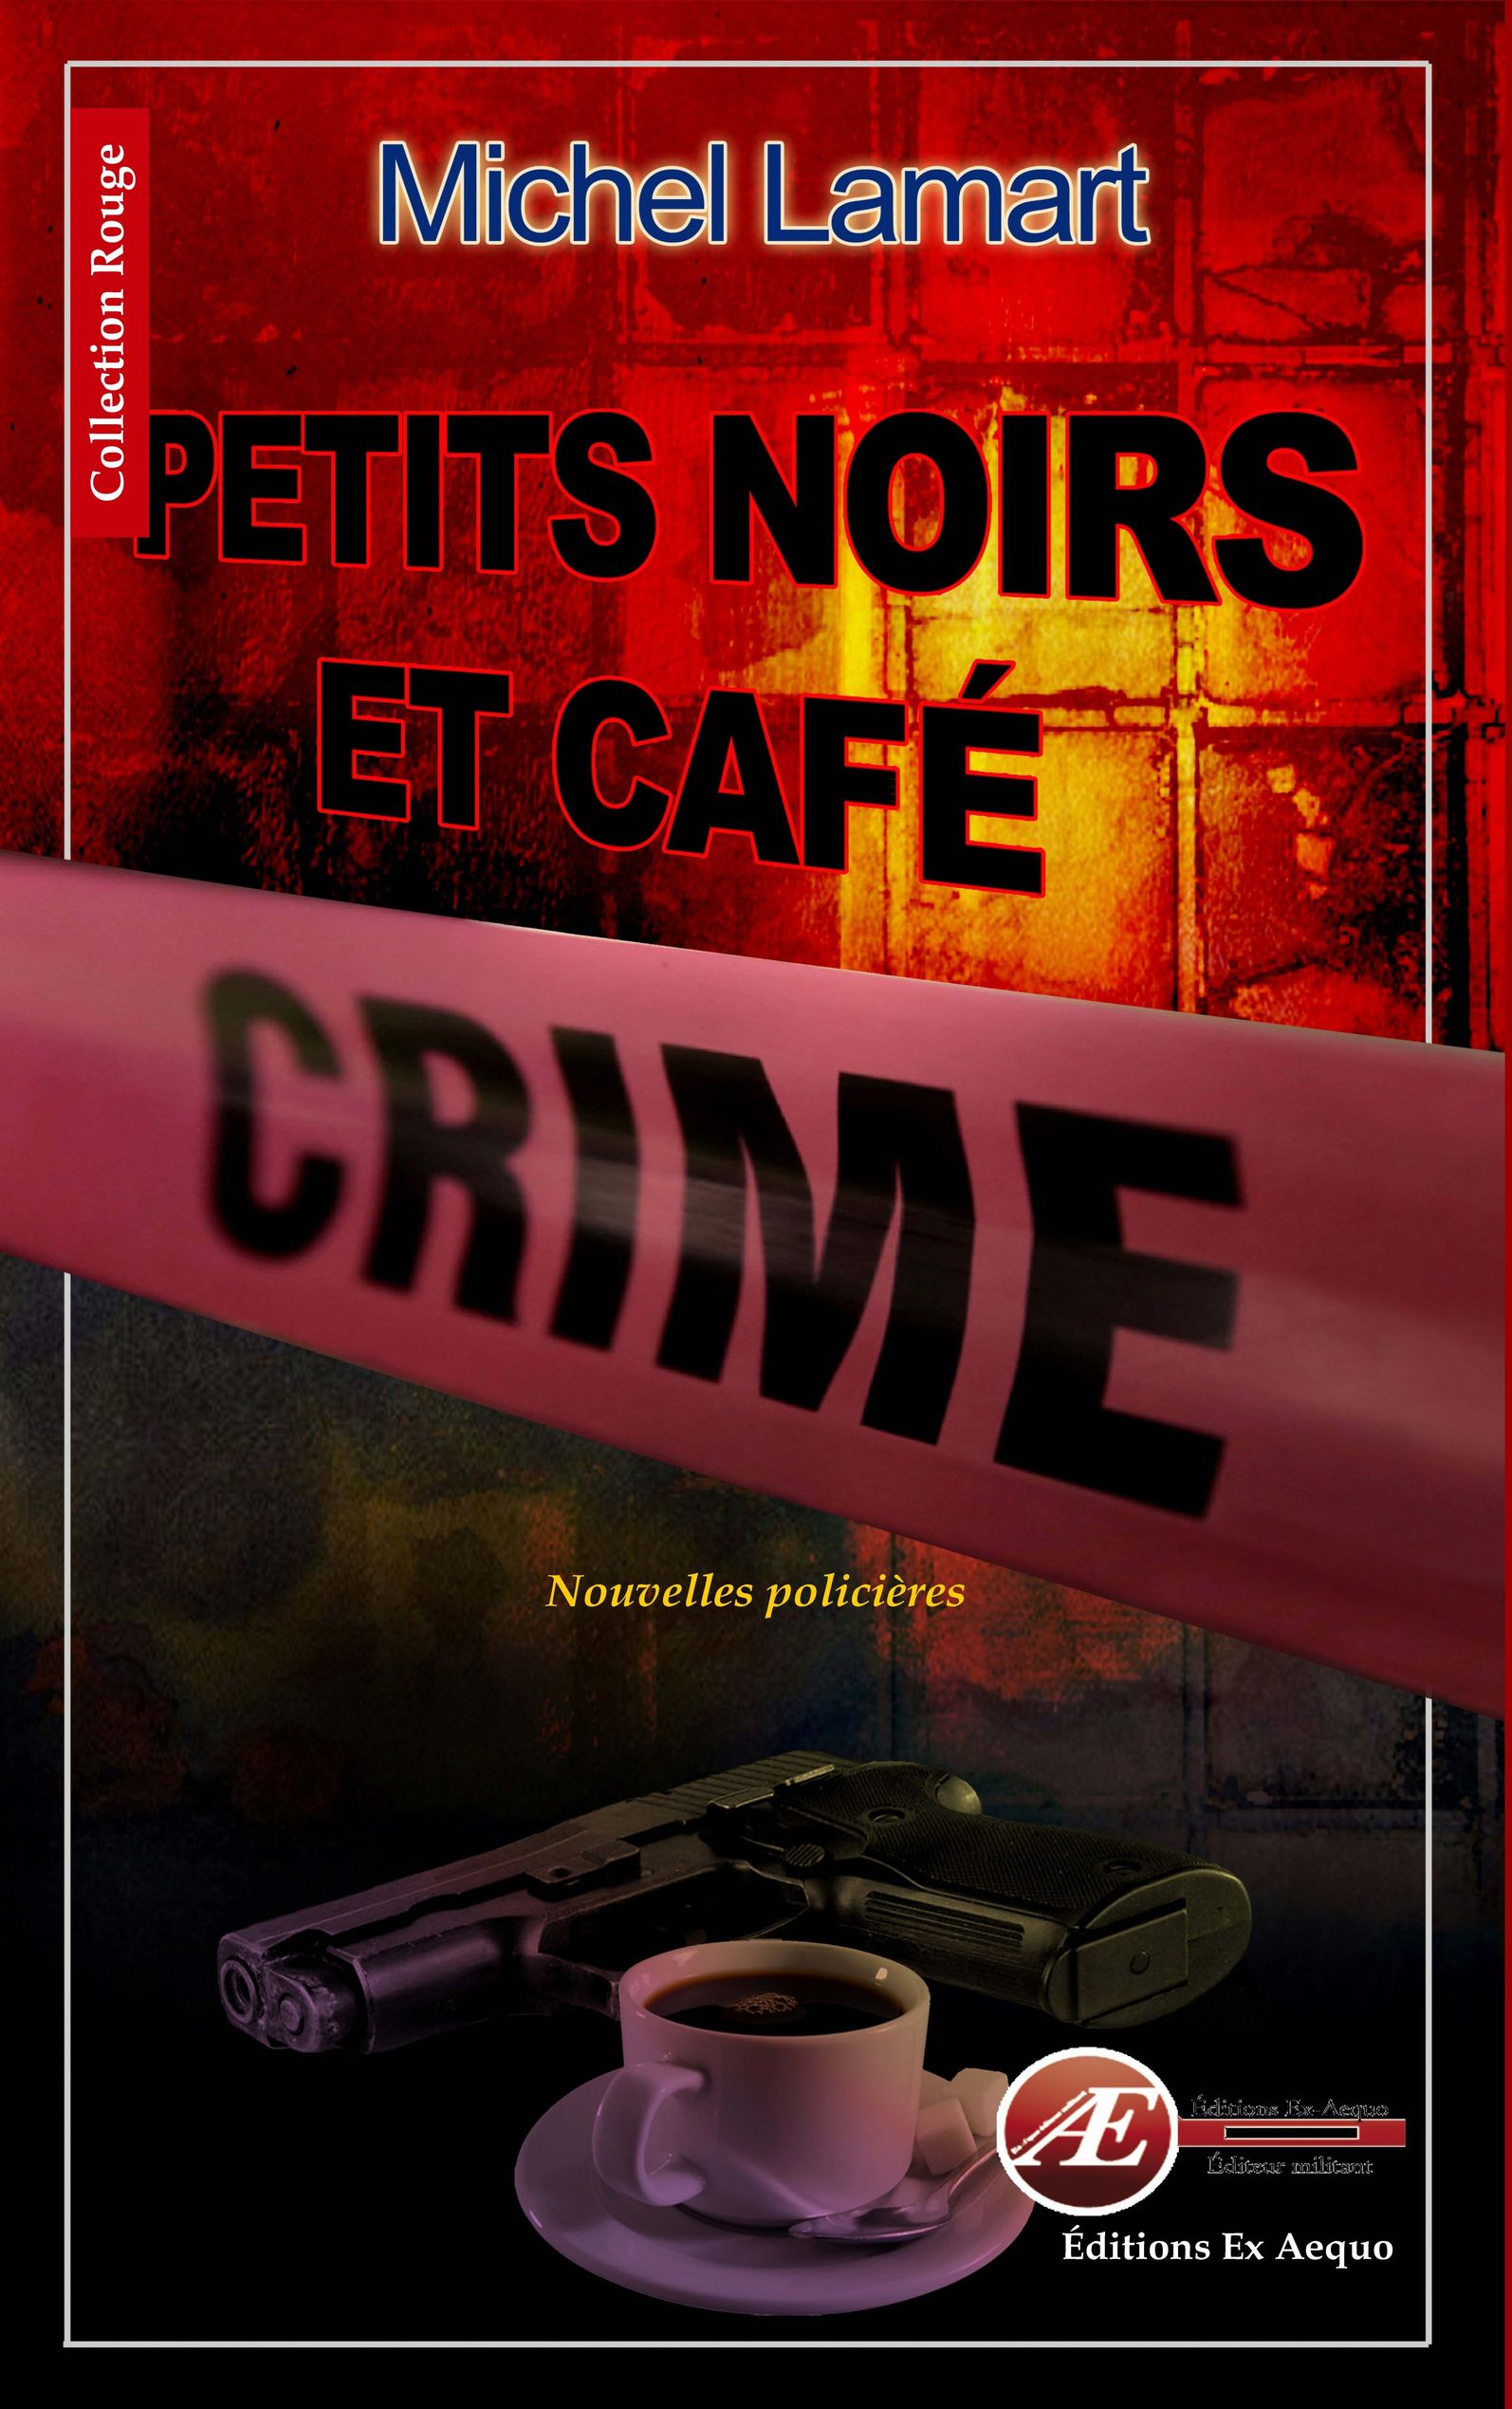 You are currently viewing Petits noirs et café crime, de Michel Lamart